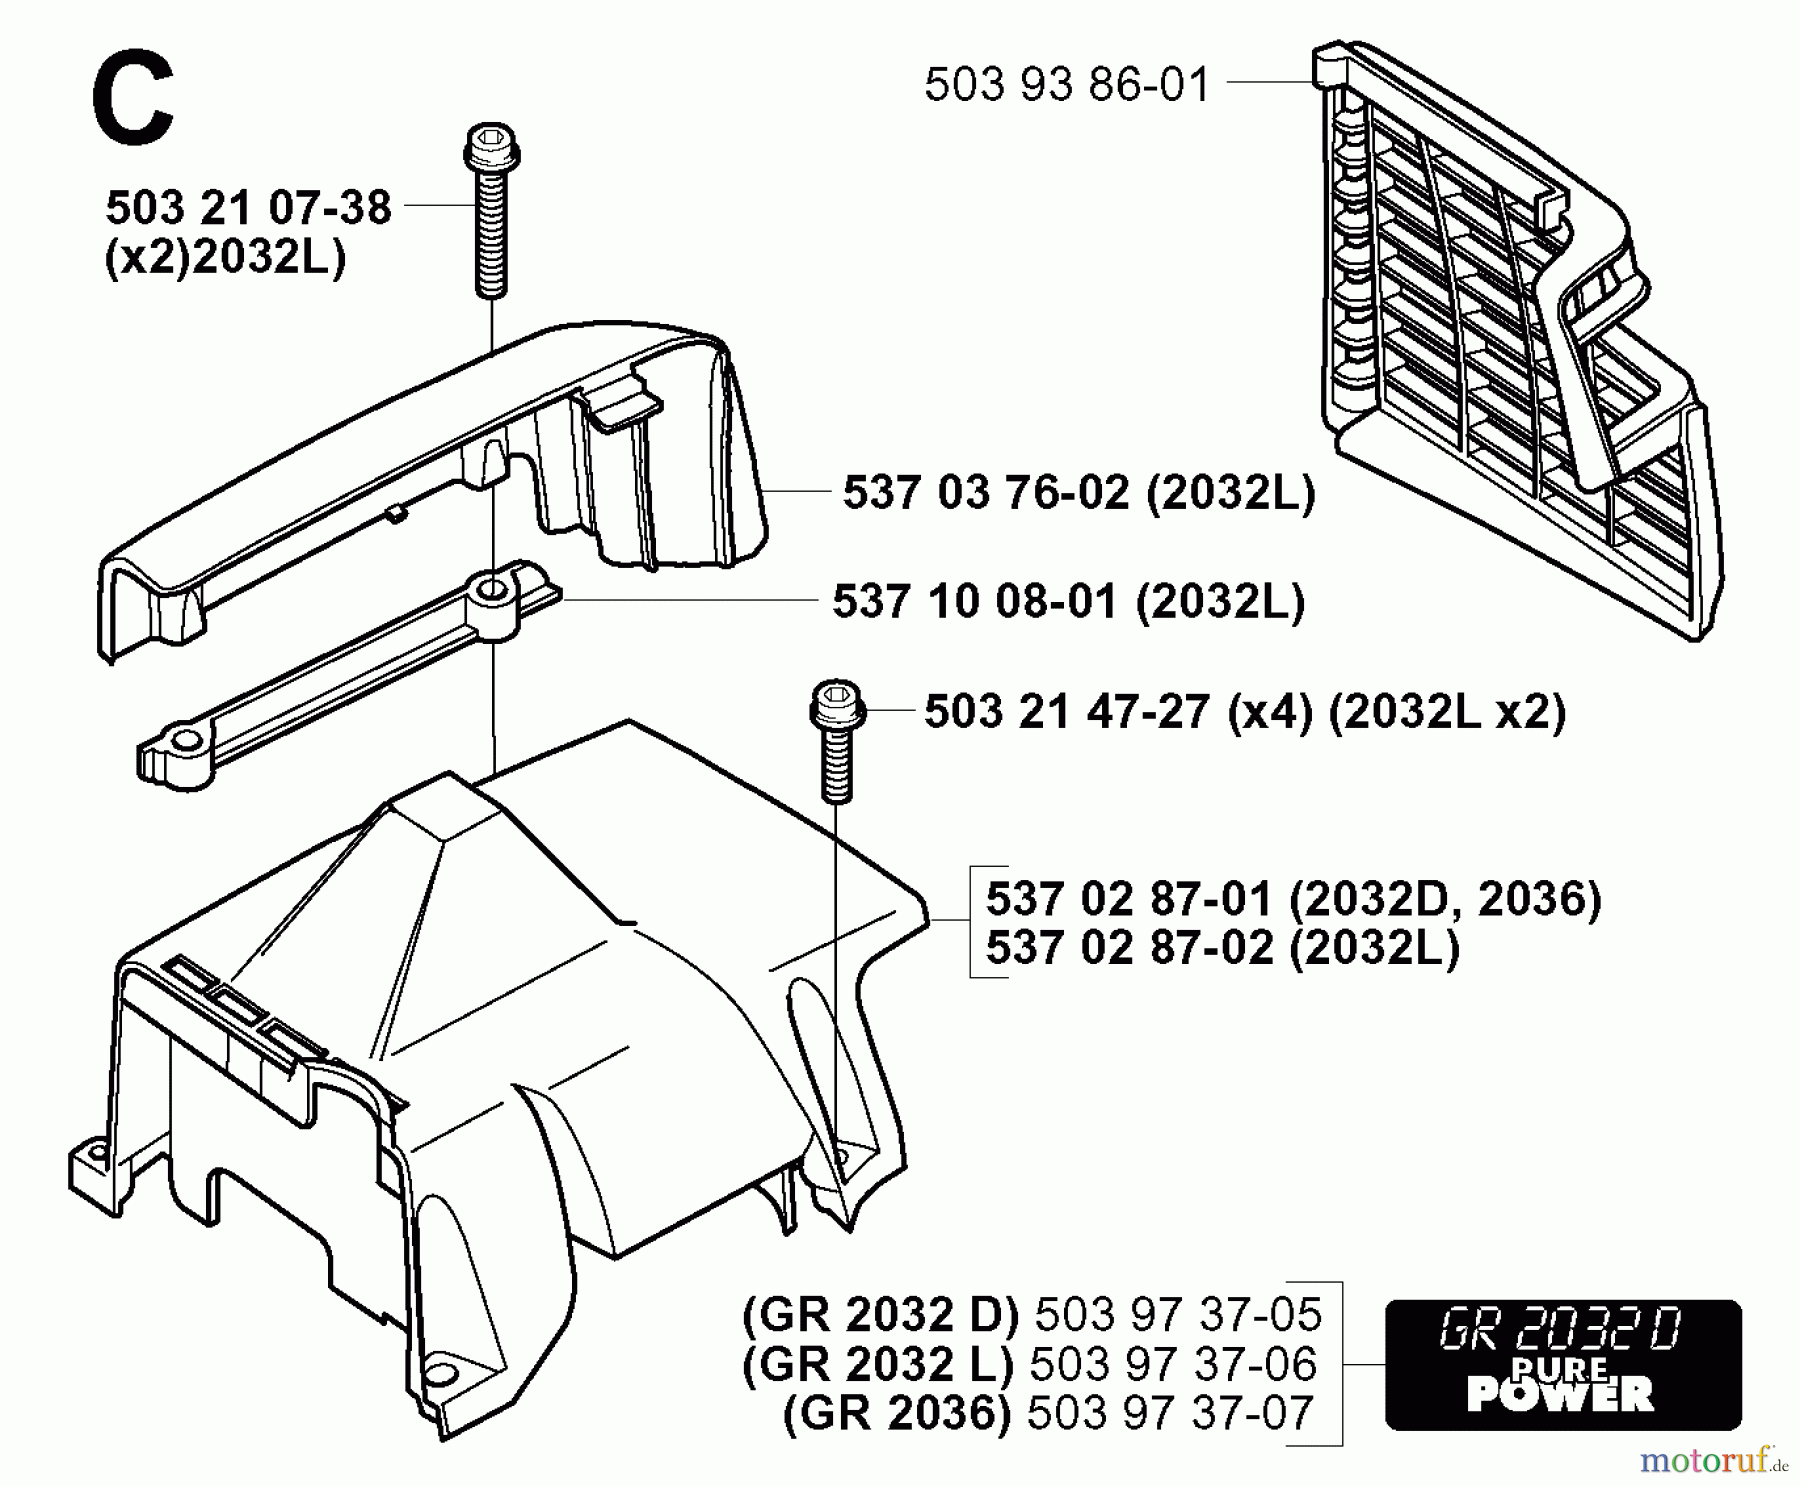  Jonsered Motorsensen, Trimmer GR2032 - Jonsered String/Brush Trimmer (2000-10) COVER